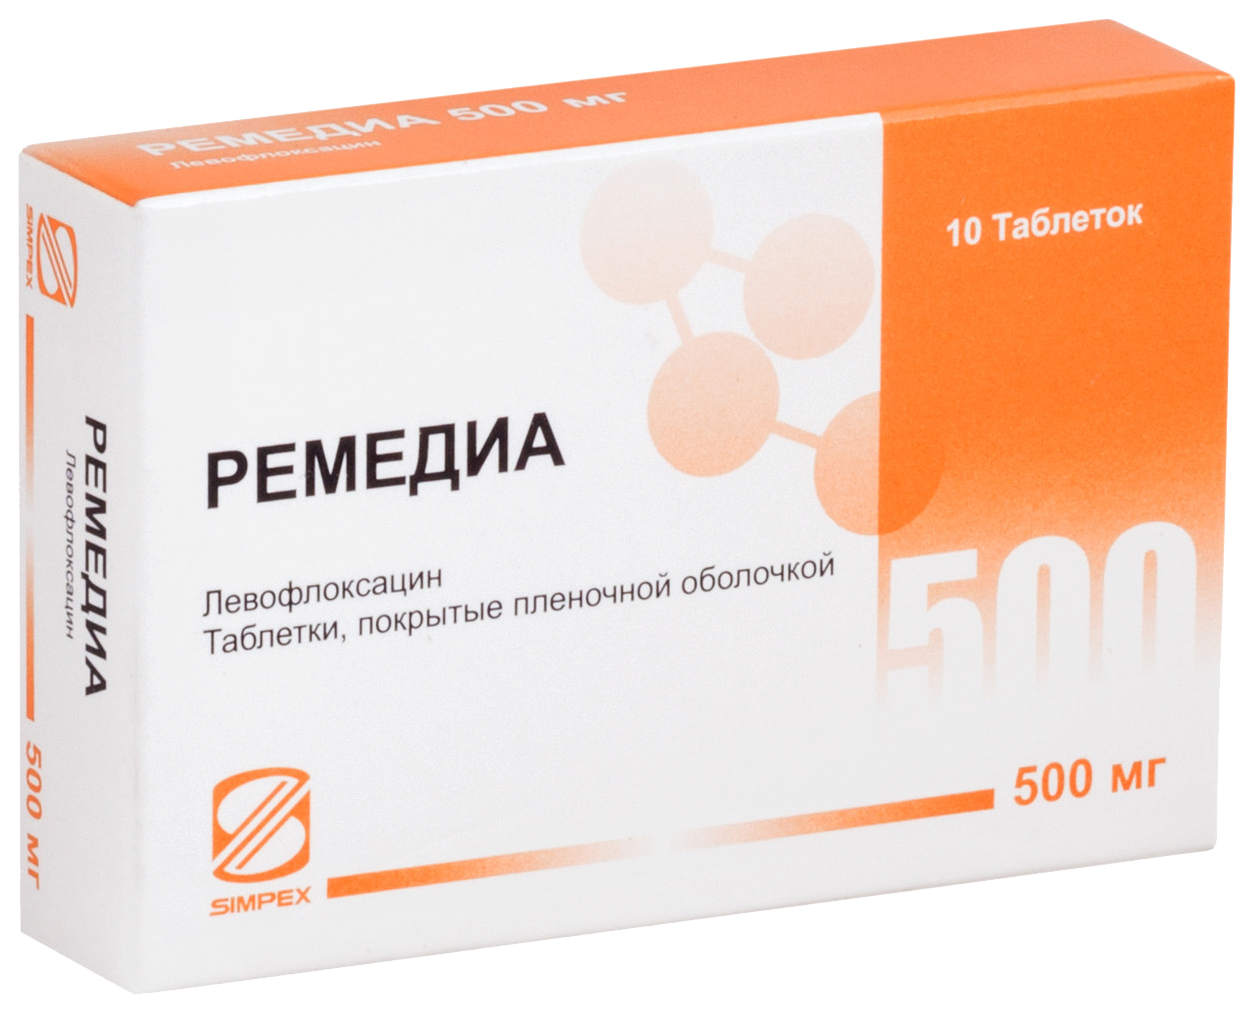 Ремедиа таблетки, покрытые пленочной оболочкой 500 мг 10 шт., Simpex Pharma  - купить со скидкой